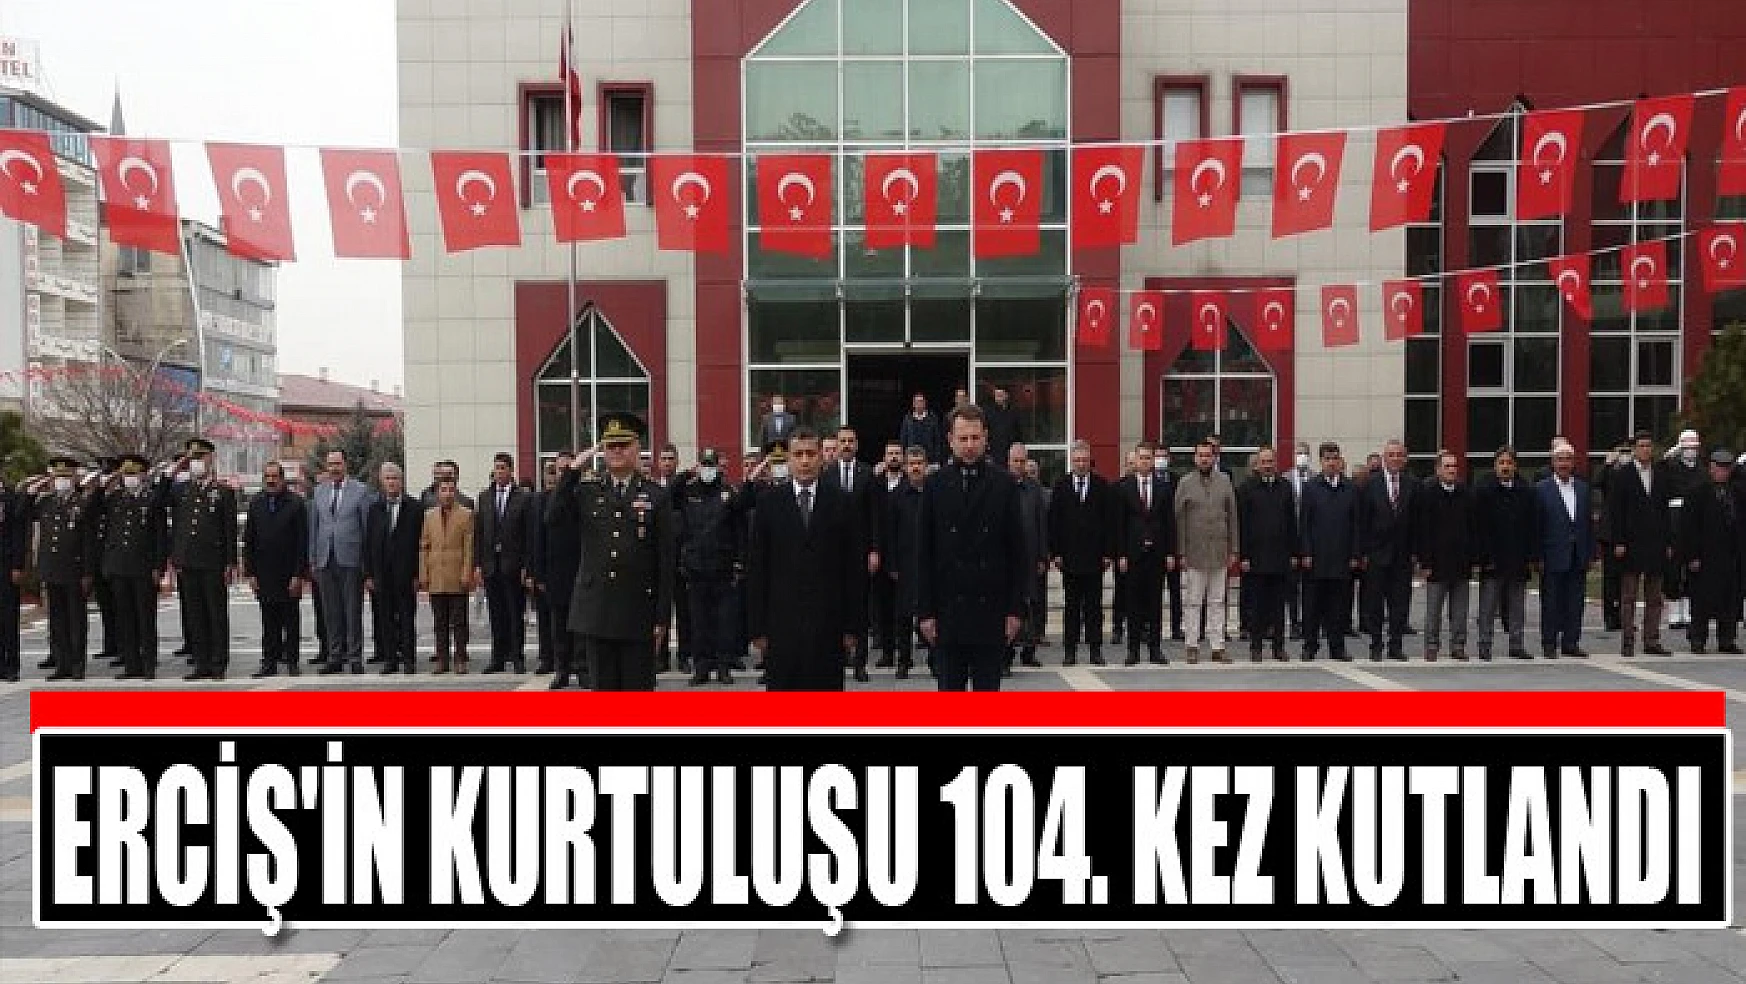 ERCİŞ'İN KURTULUŞU 104. KEZ KUTLANDI